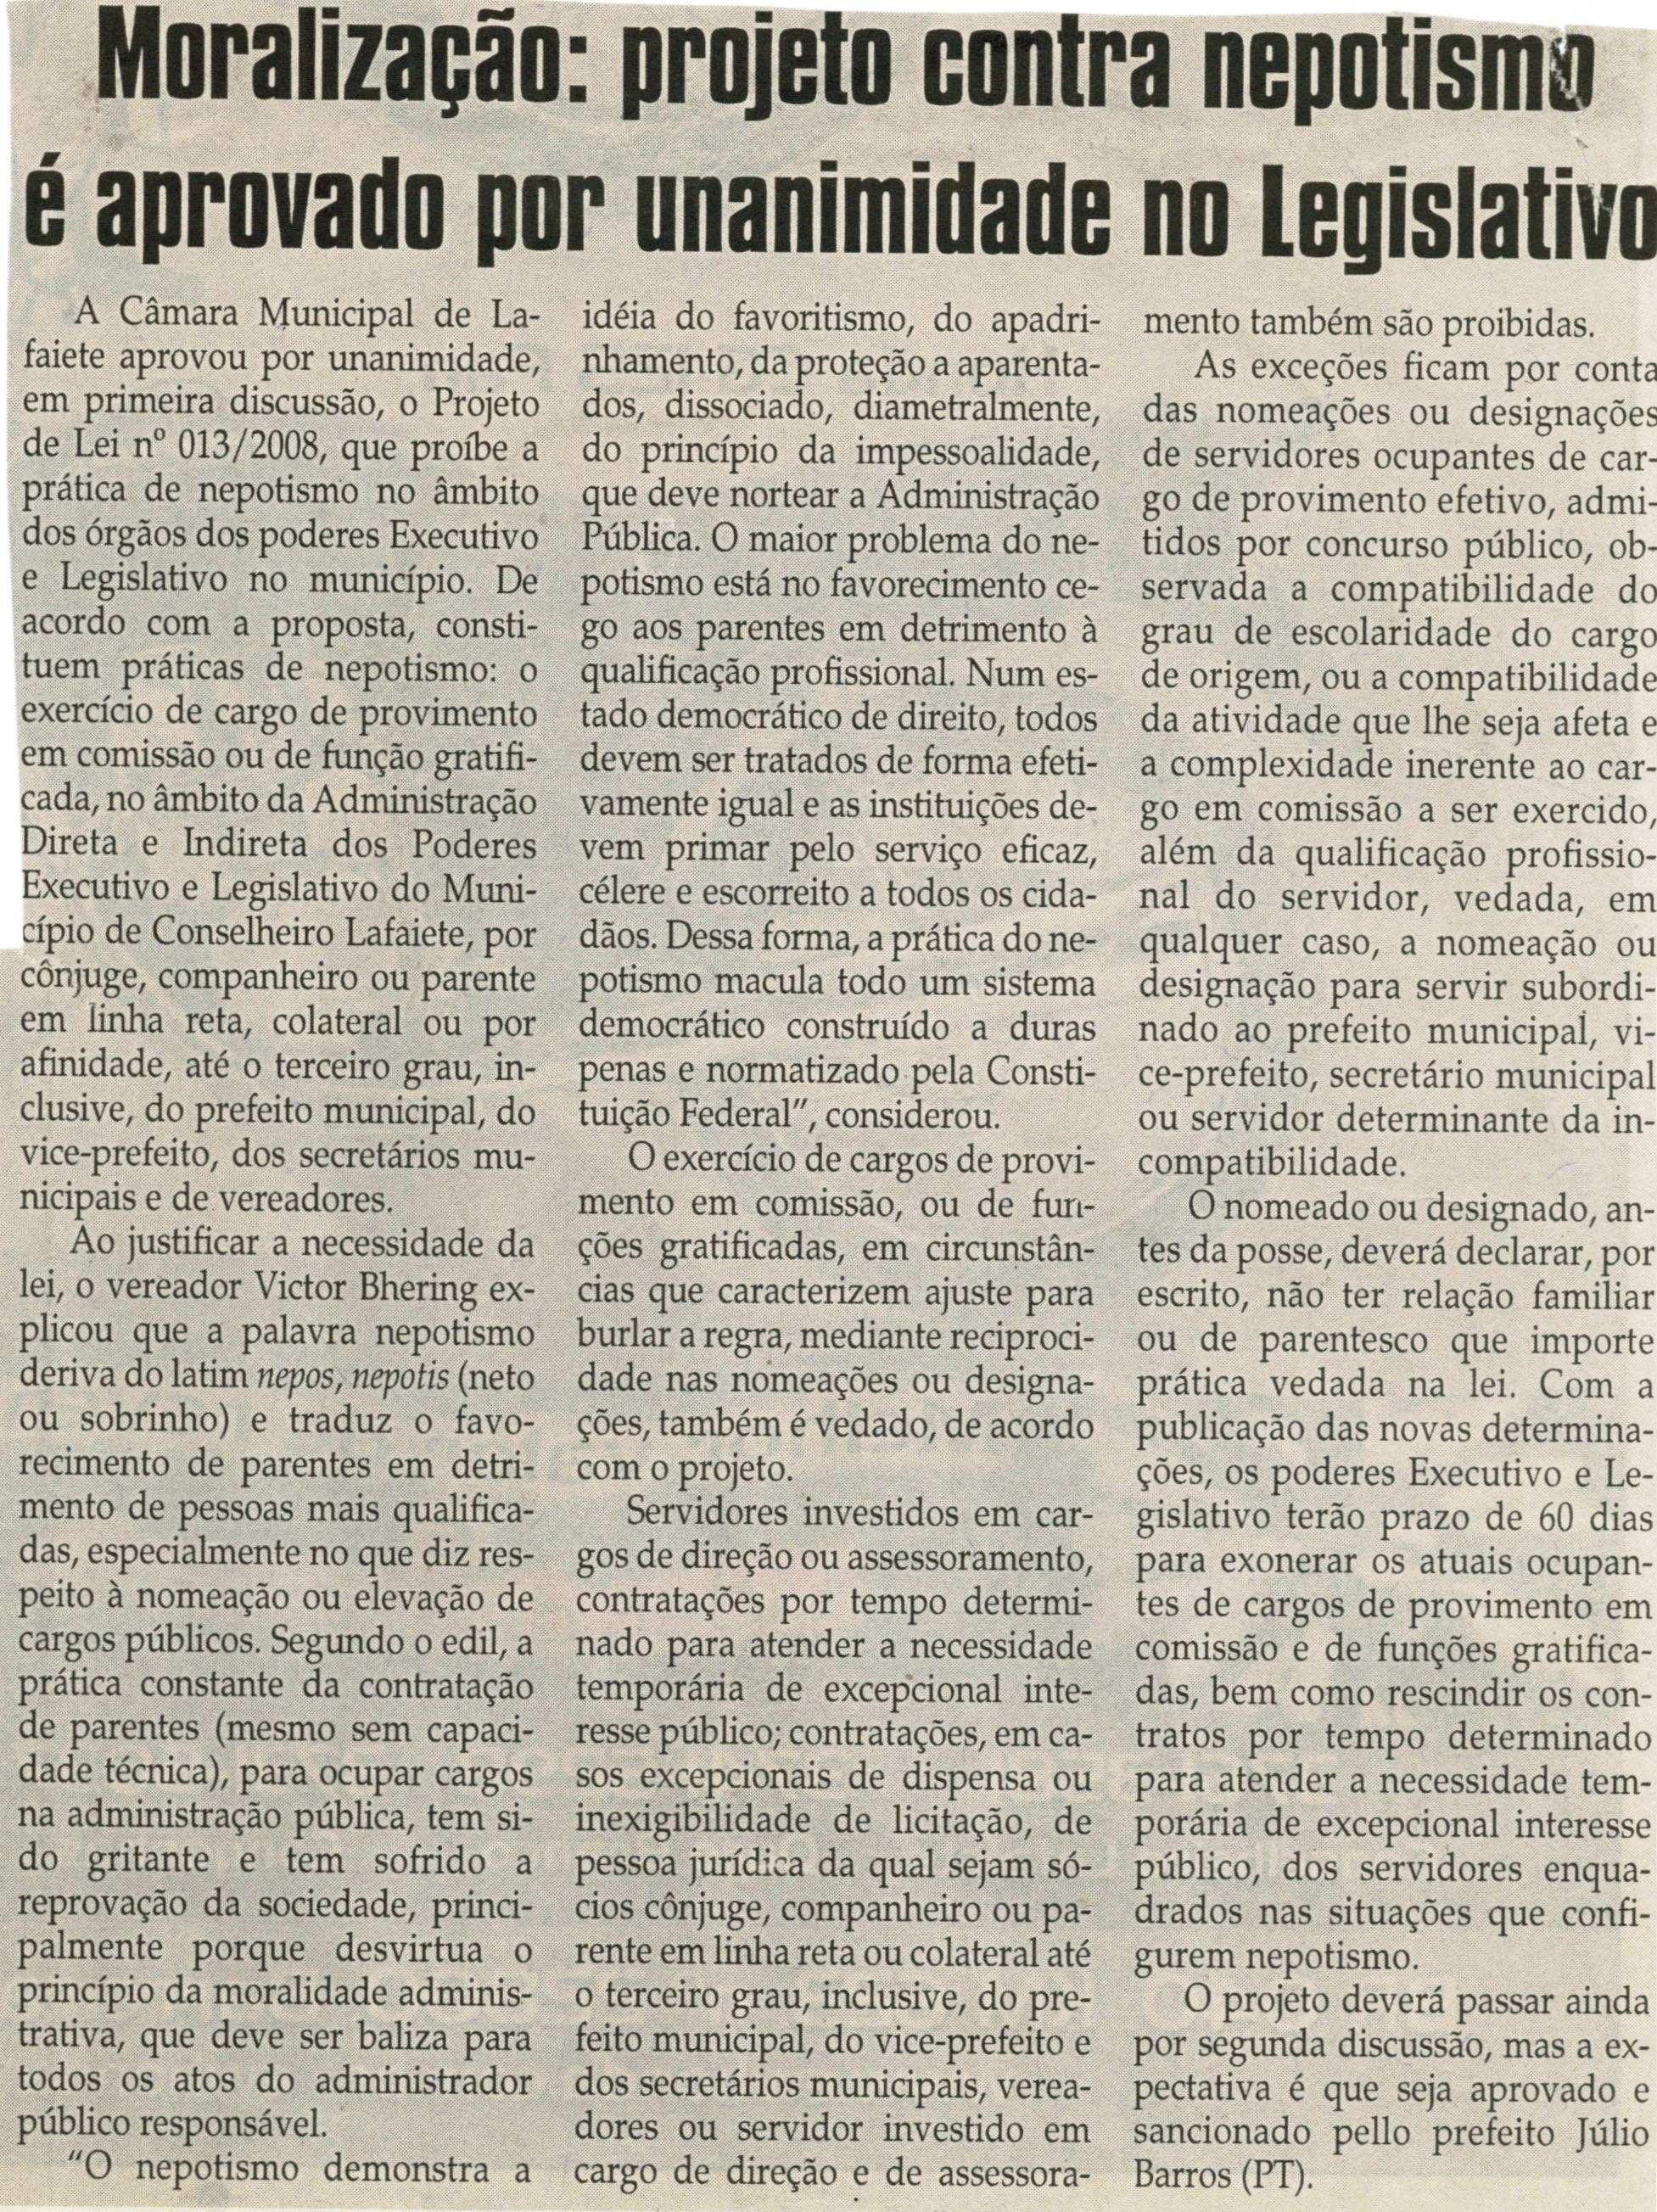 Moralização projeto contra nepotismo é aprovado por unanimidade no Legislativo. Jornal Correio da Cidade, 24 mai. 2008, p. 04.